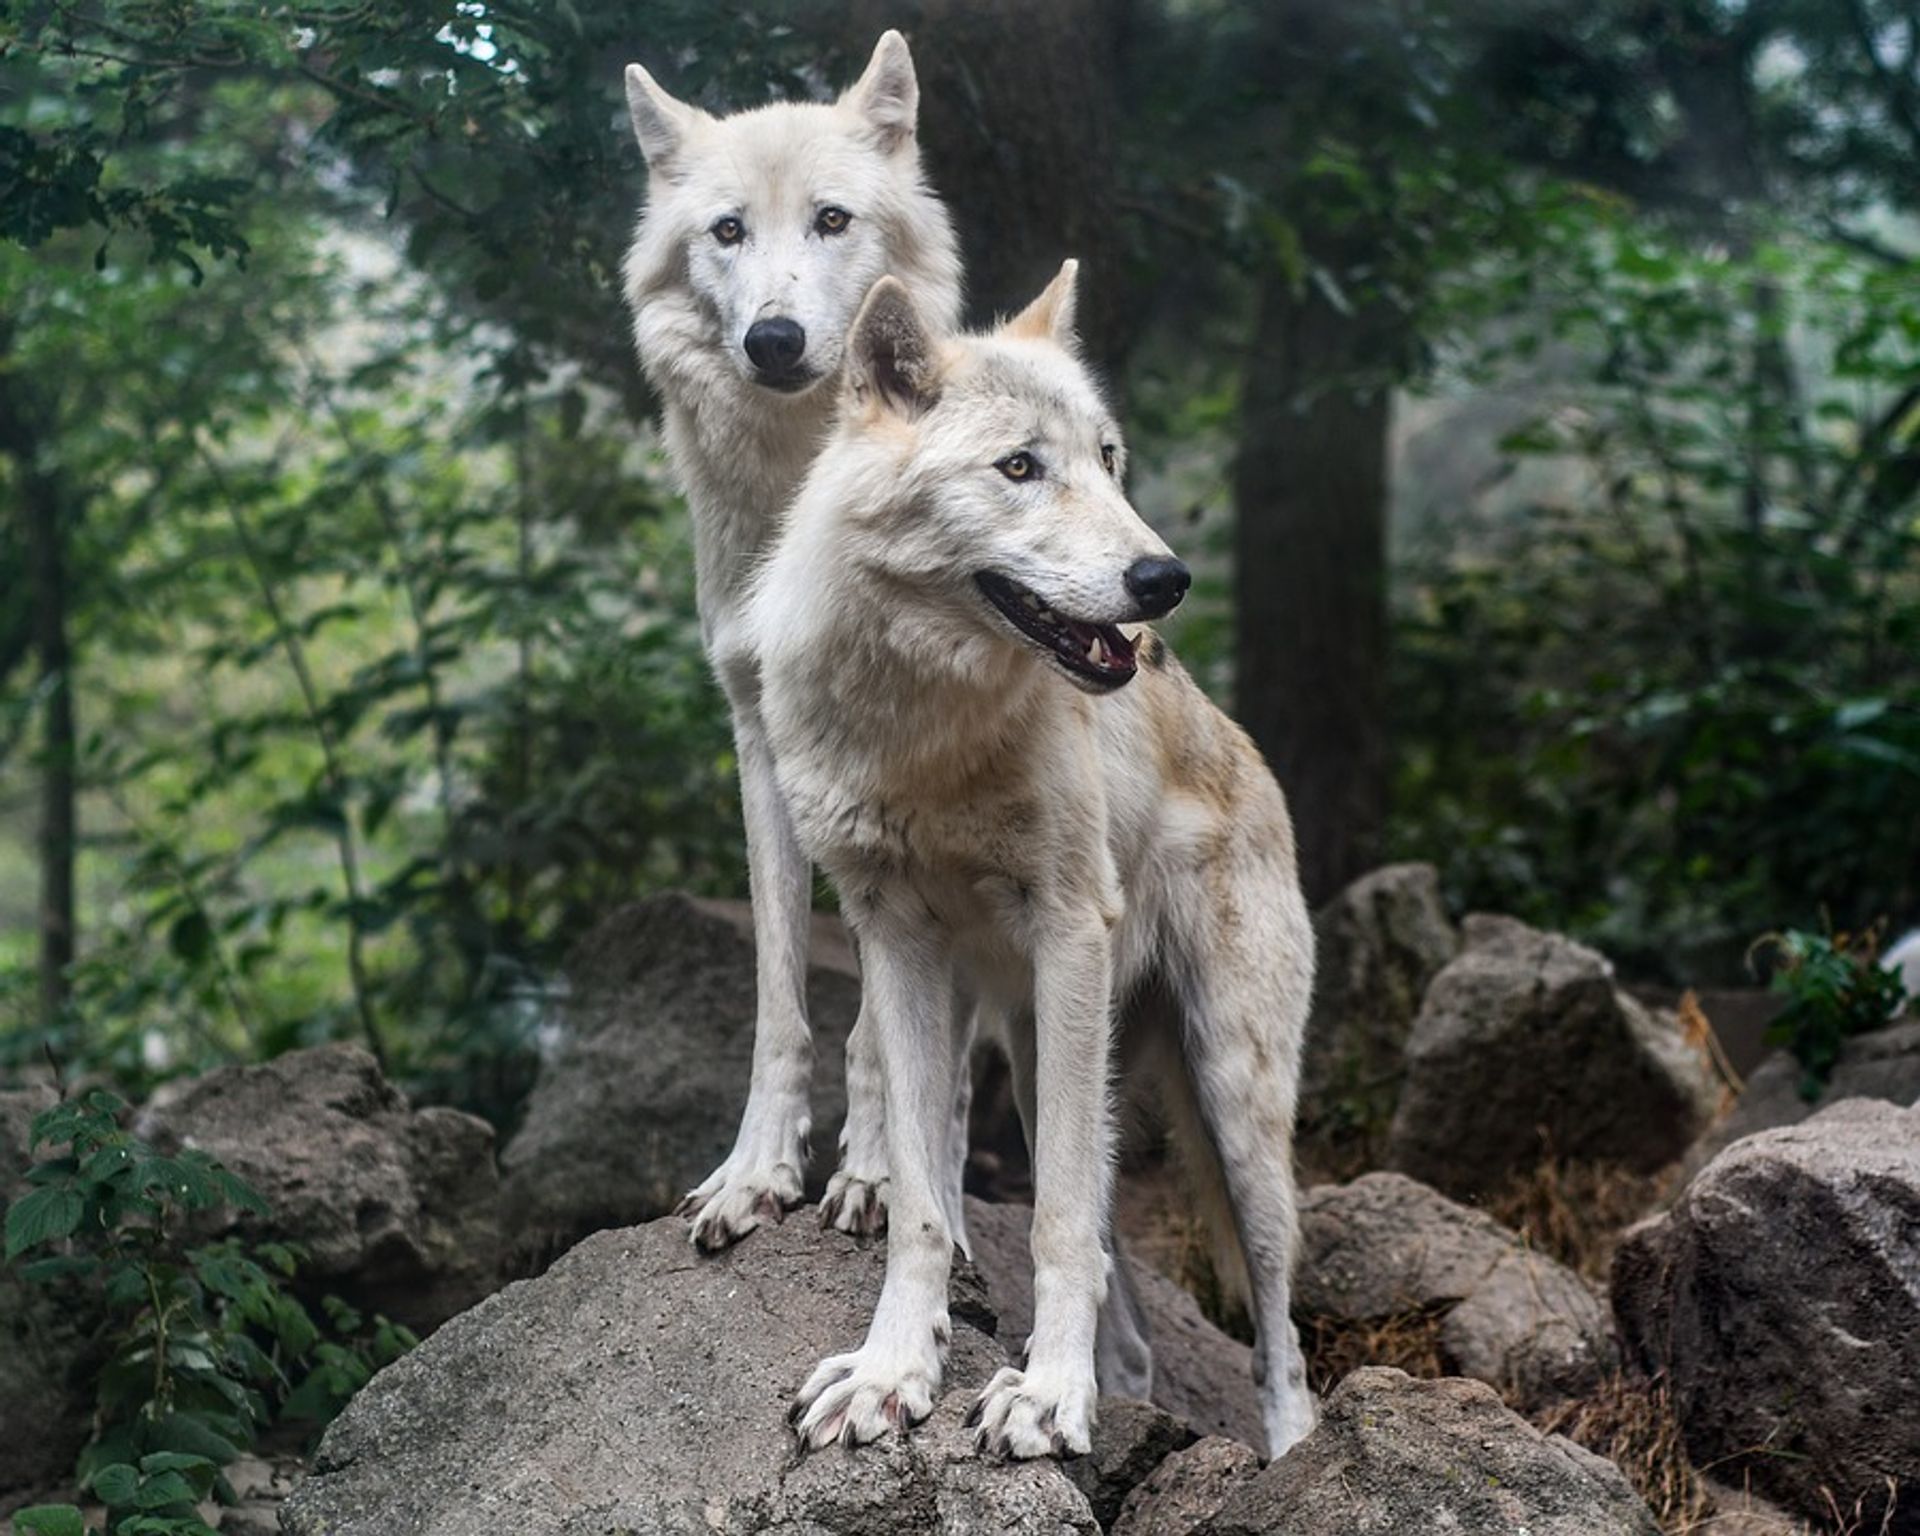  Wrocławskie ZOO wybuduje w przyszłym roku nowe obiekty dla wilków europejskich